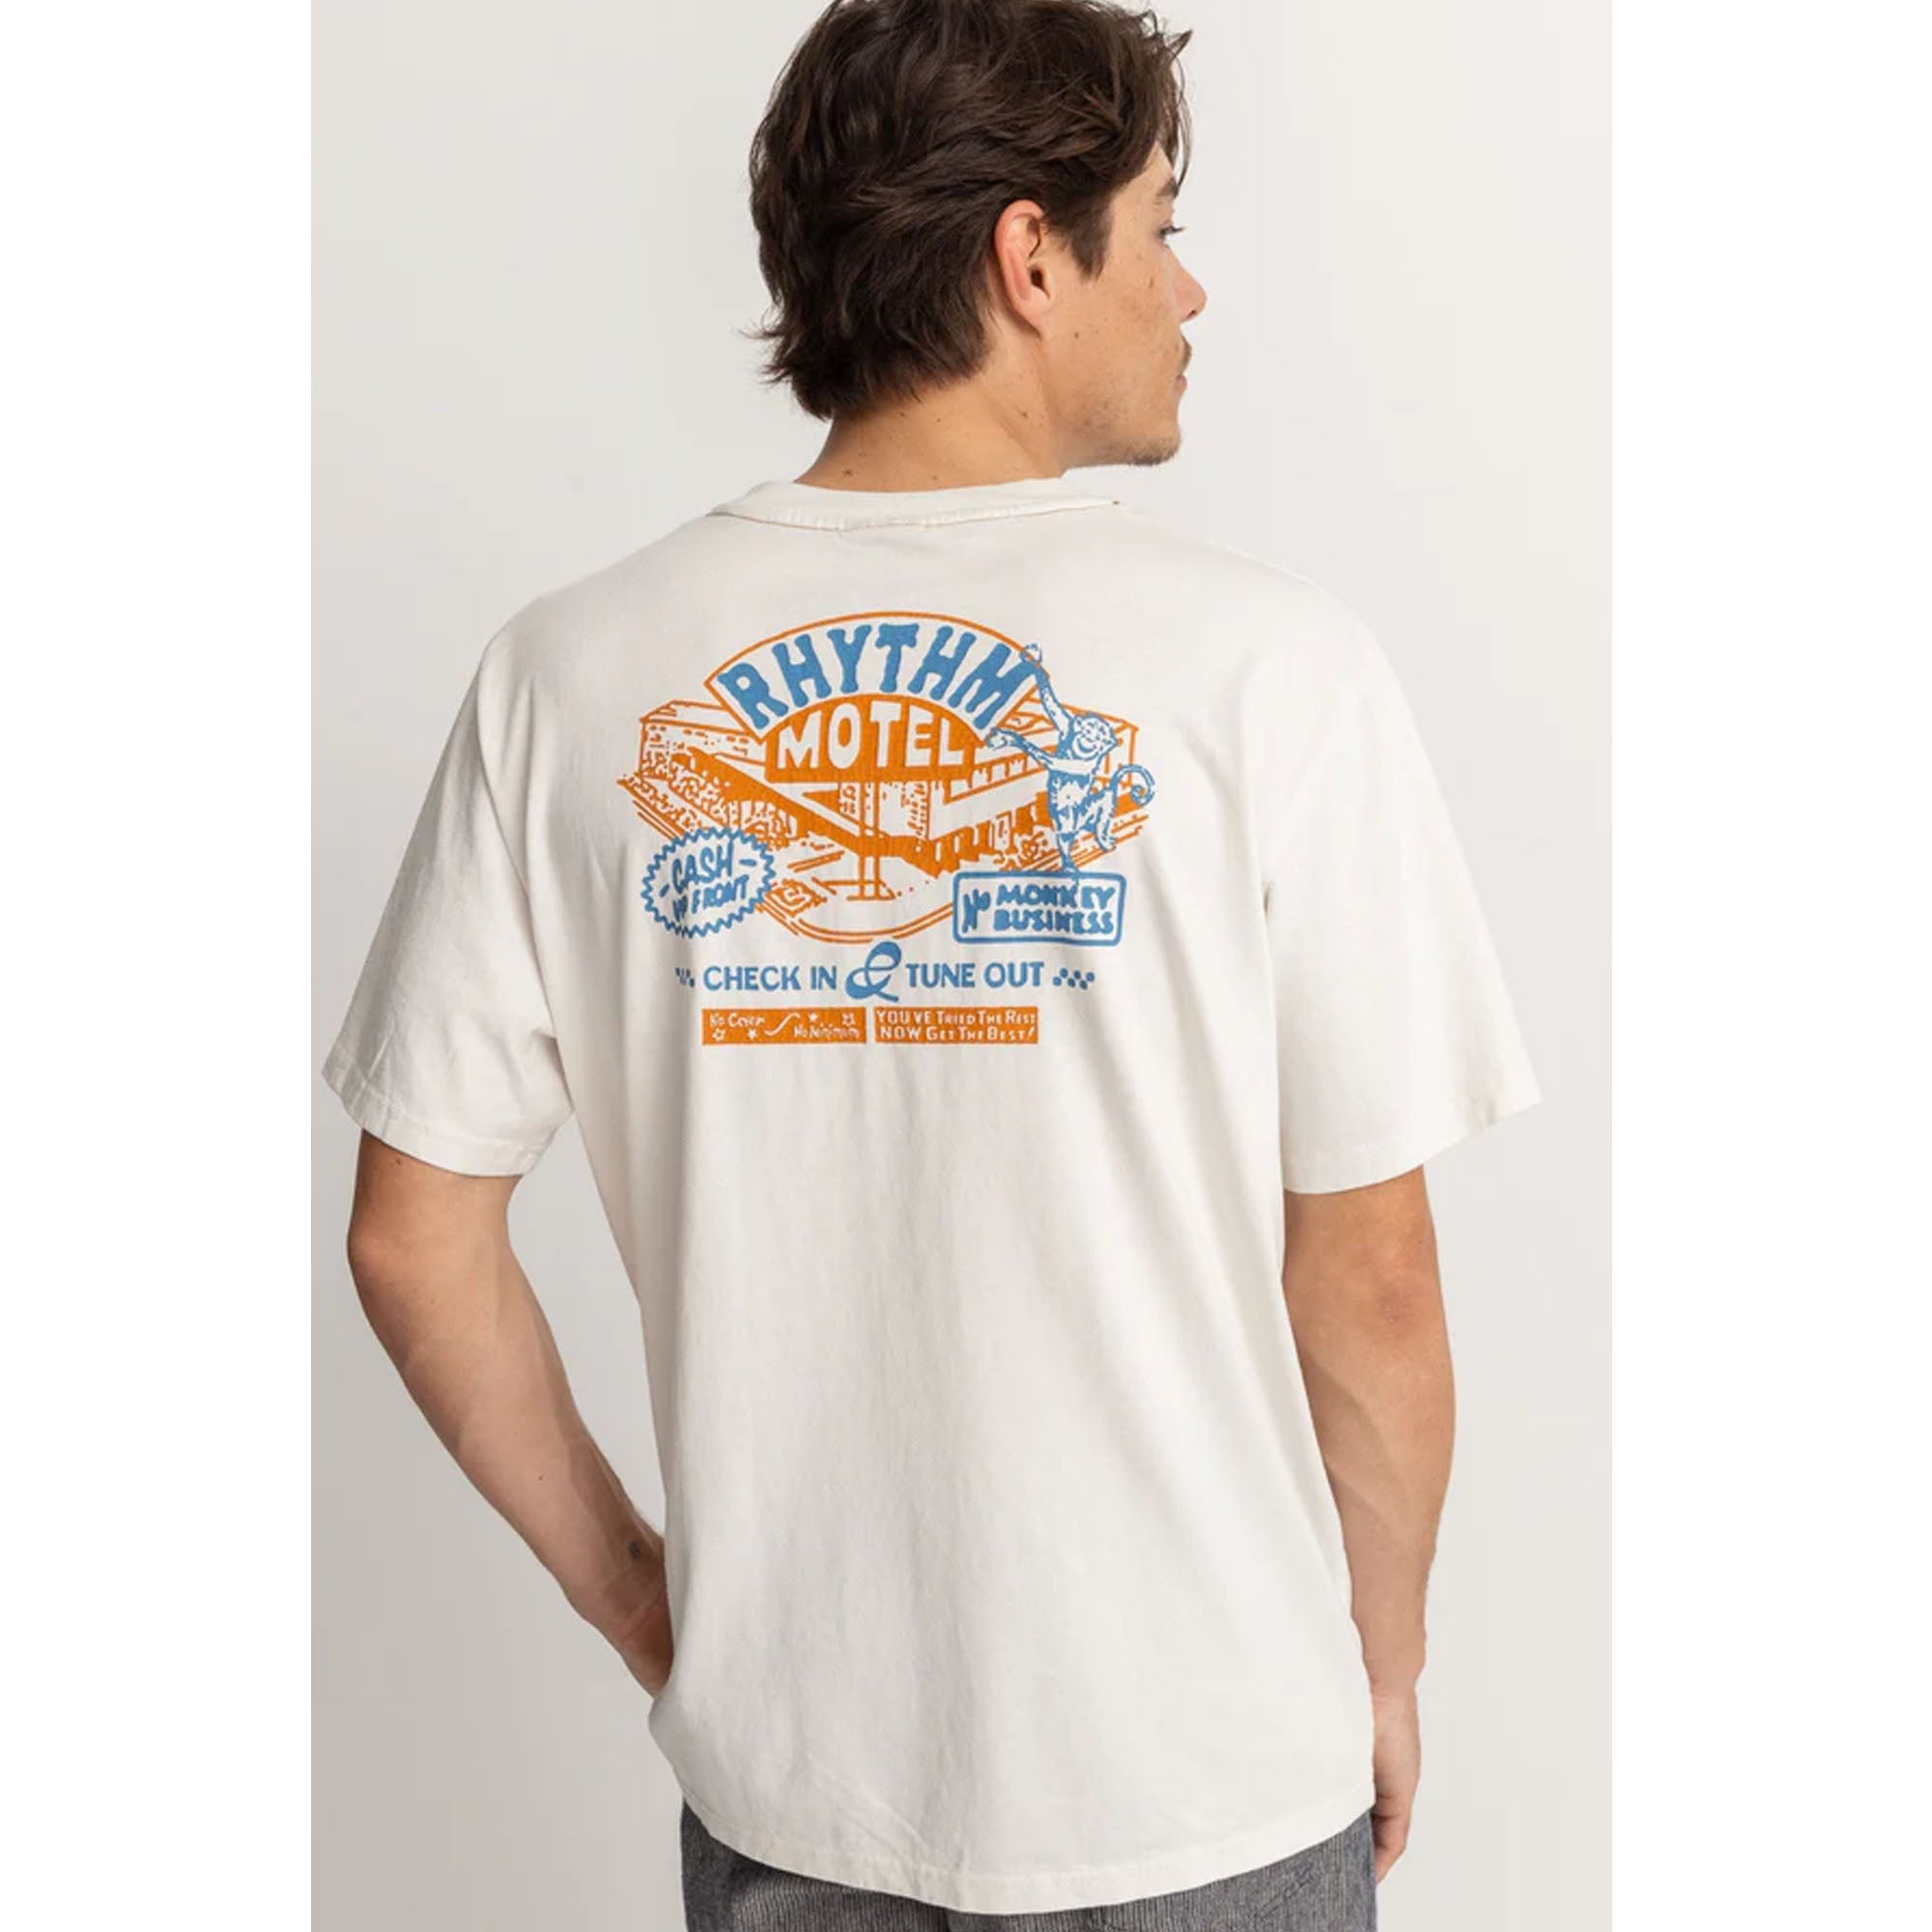 Rhythm Motel Vintage Men's S/S T-Shirt